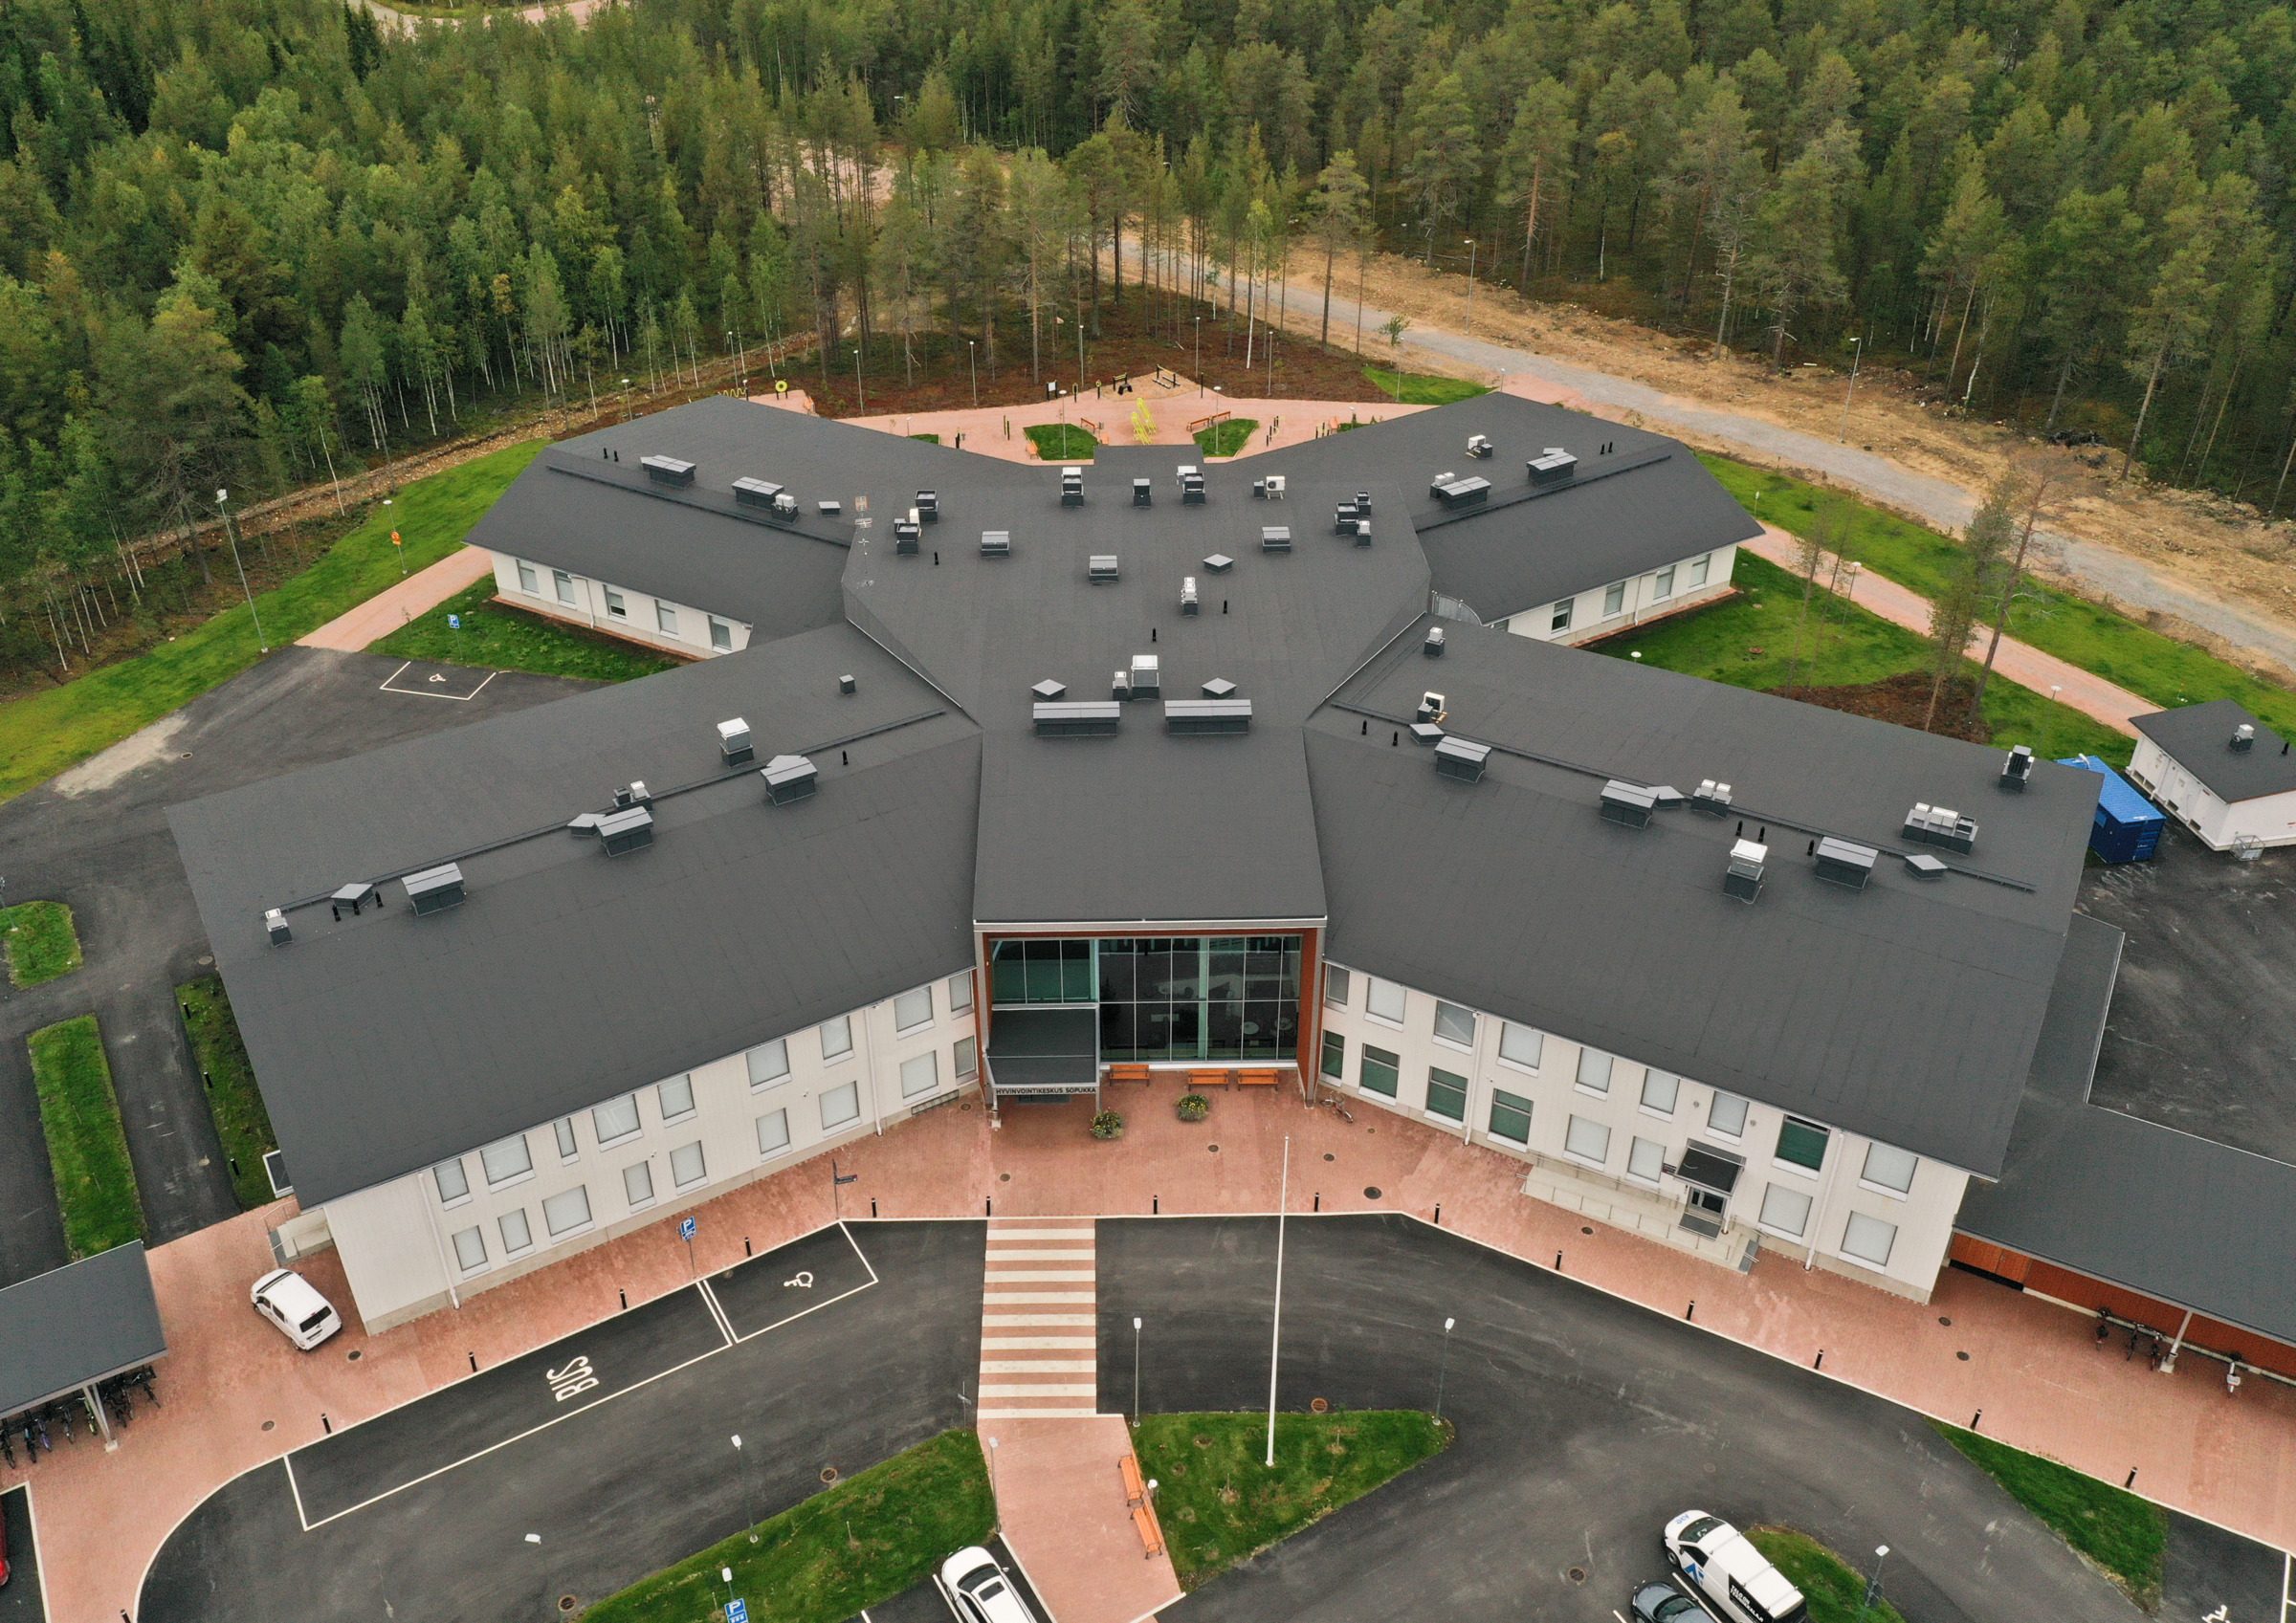 Drone-kuva Sodankylän hyvinvointikeskus Sopukasta. Rakennuksessa erottuu suuresta aulasta lähtevät neljä siipeä X-muodossa.